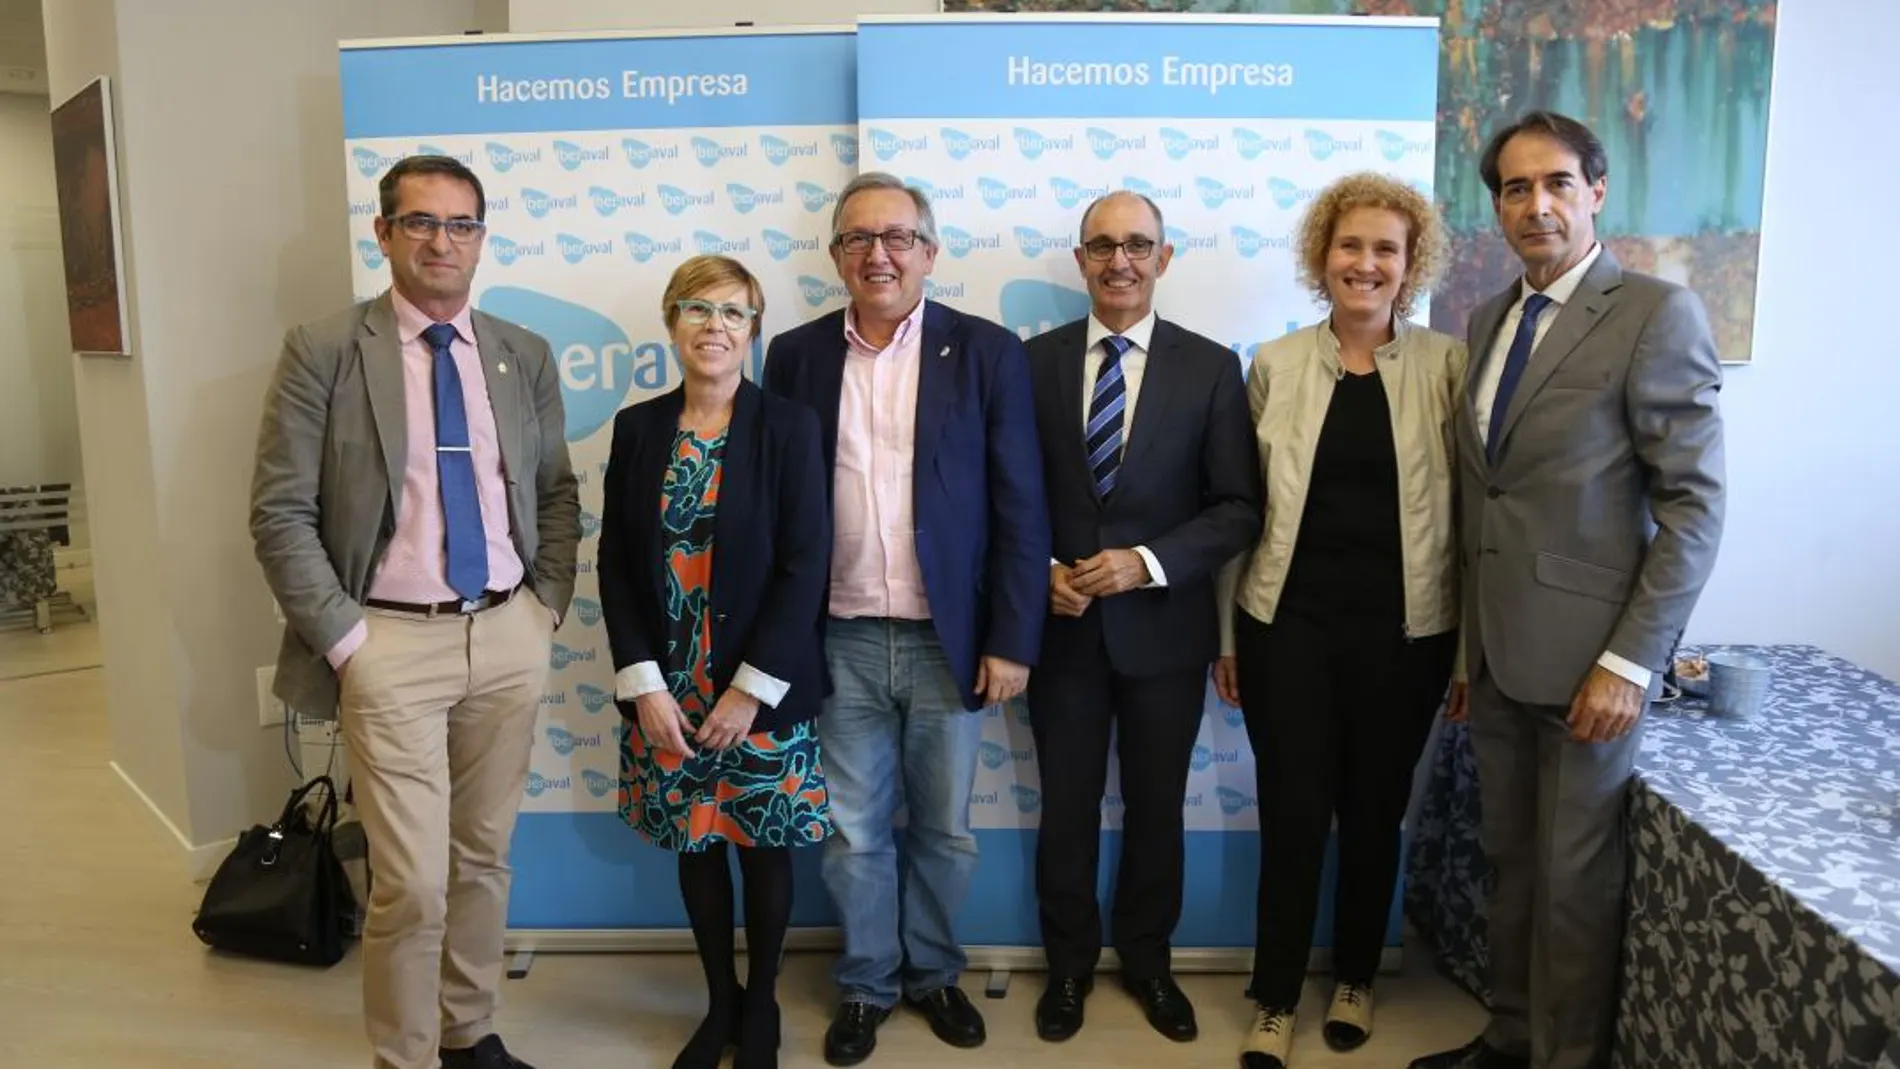 El director general de Iberaval, Pedro Pisonero, inaugura la nueva sede de la organización en Segovia